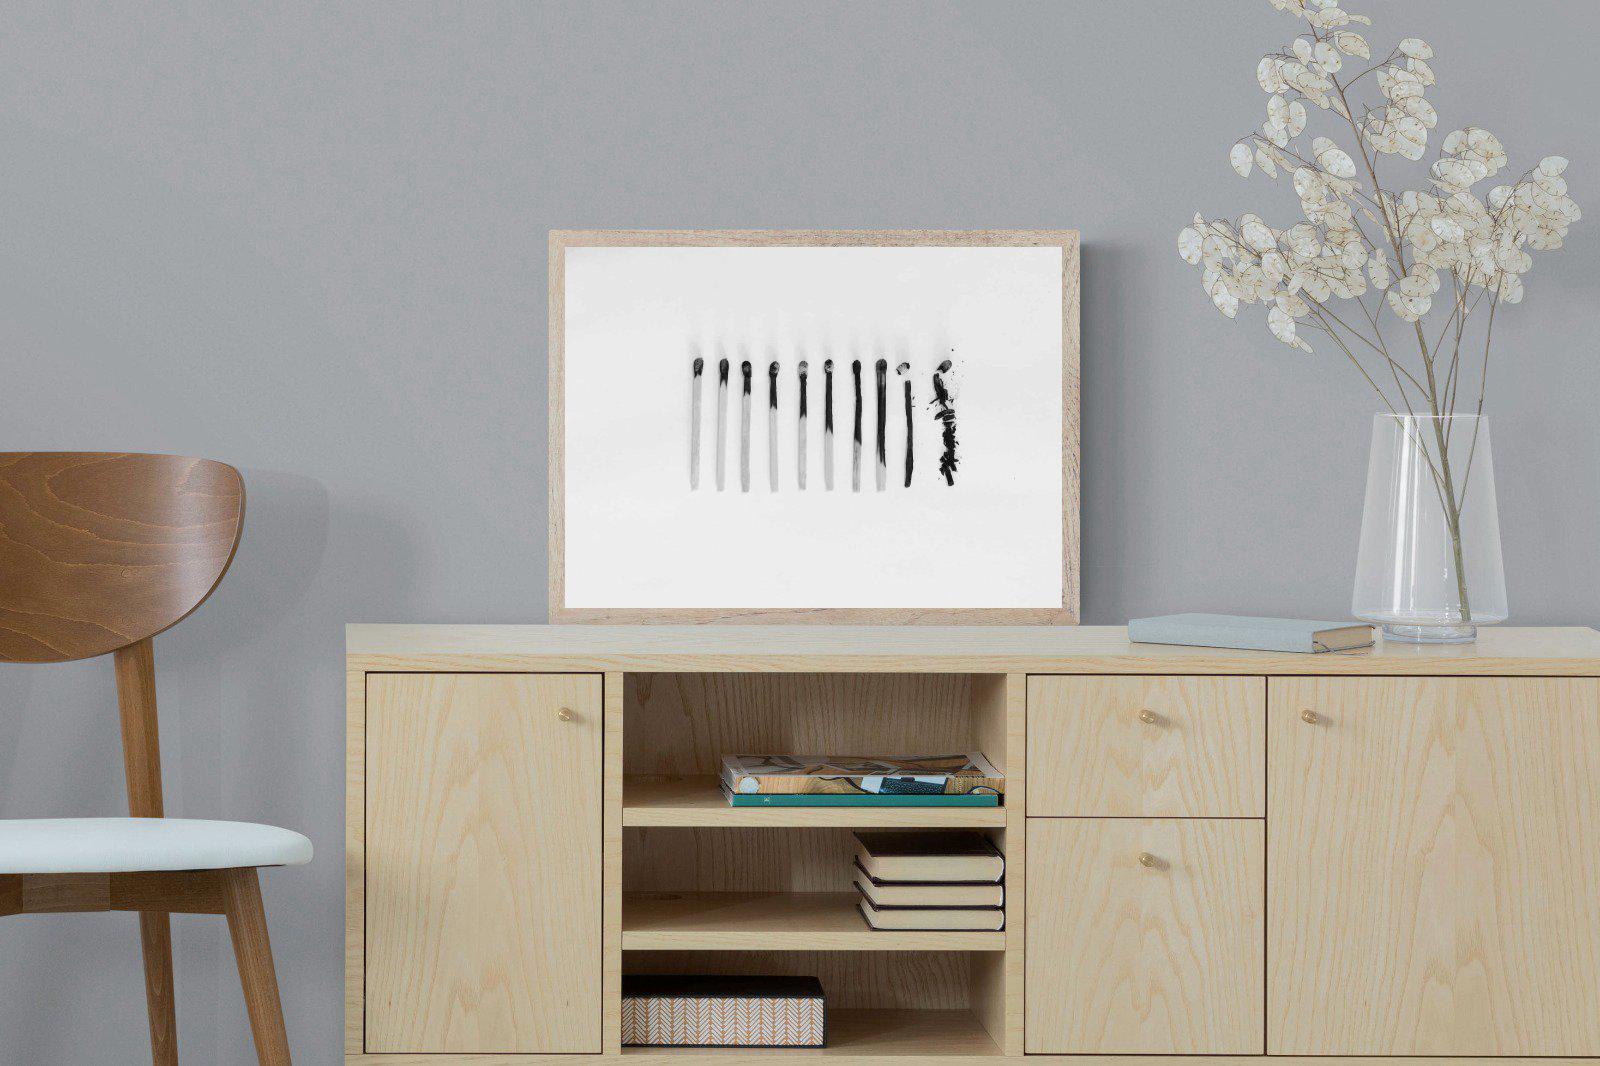 Matchsticks-Wall_Art-60 x 45cm-Mounted Canvas-Wood-Pixalot